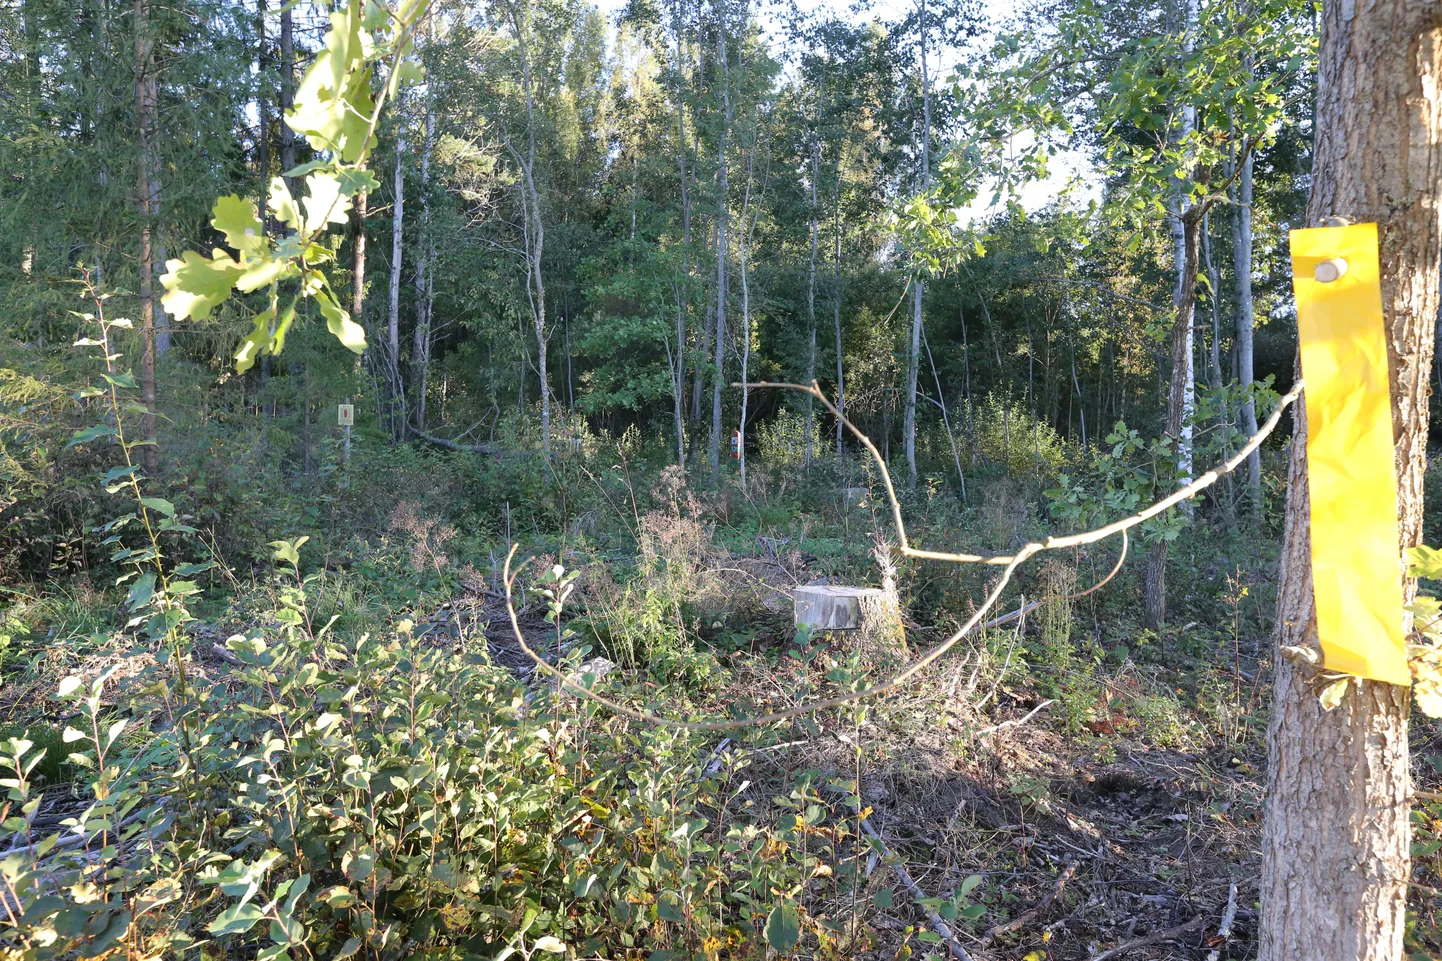 Koht Luhamaa piiripunkti läheduses, kus rööviti Eesti kaitsepolitseinik.